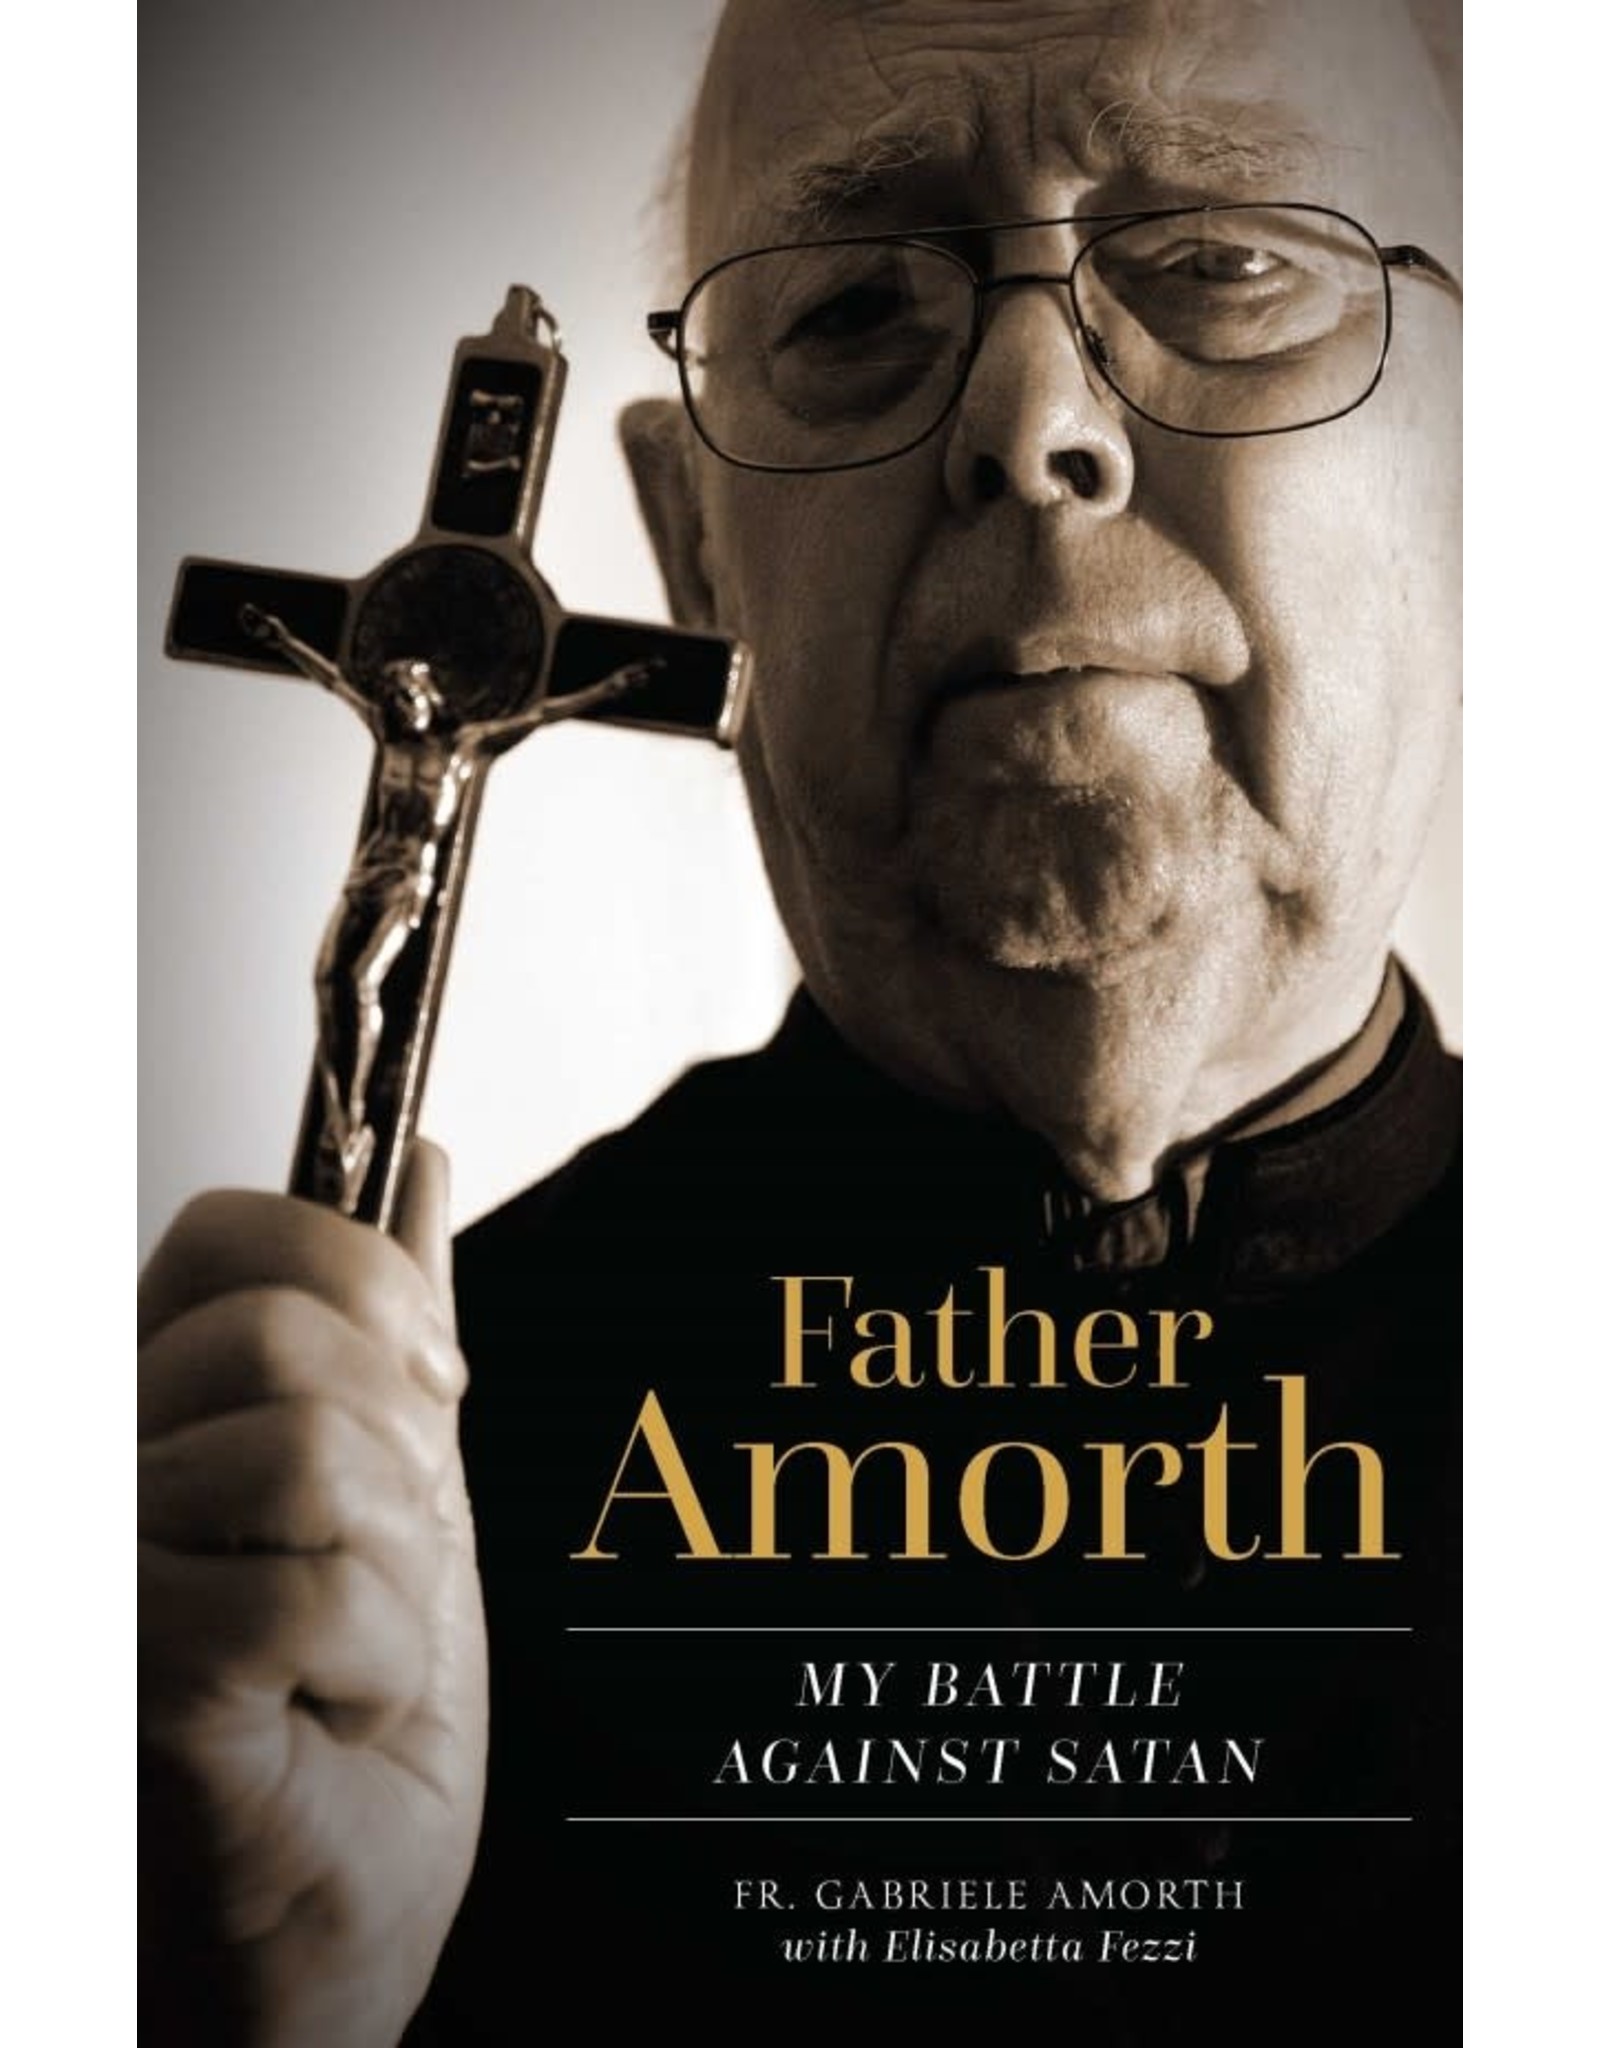 Father Amorth: My Battle Against Satan by Fr. Gabriele Amorth